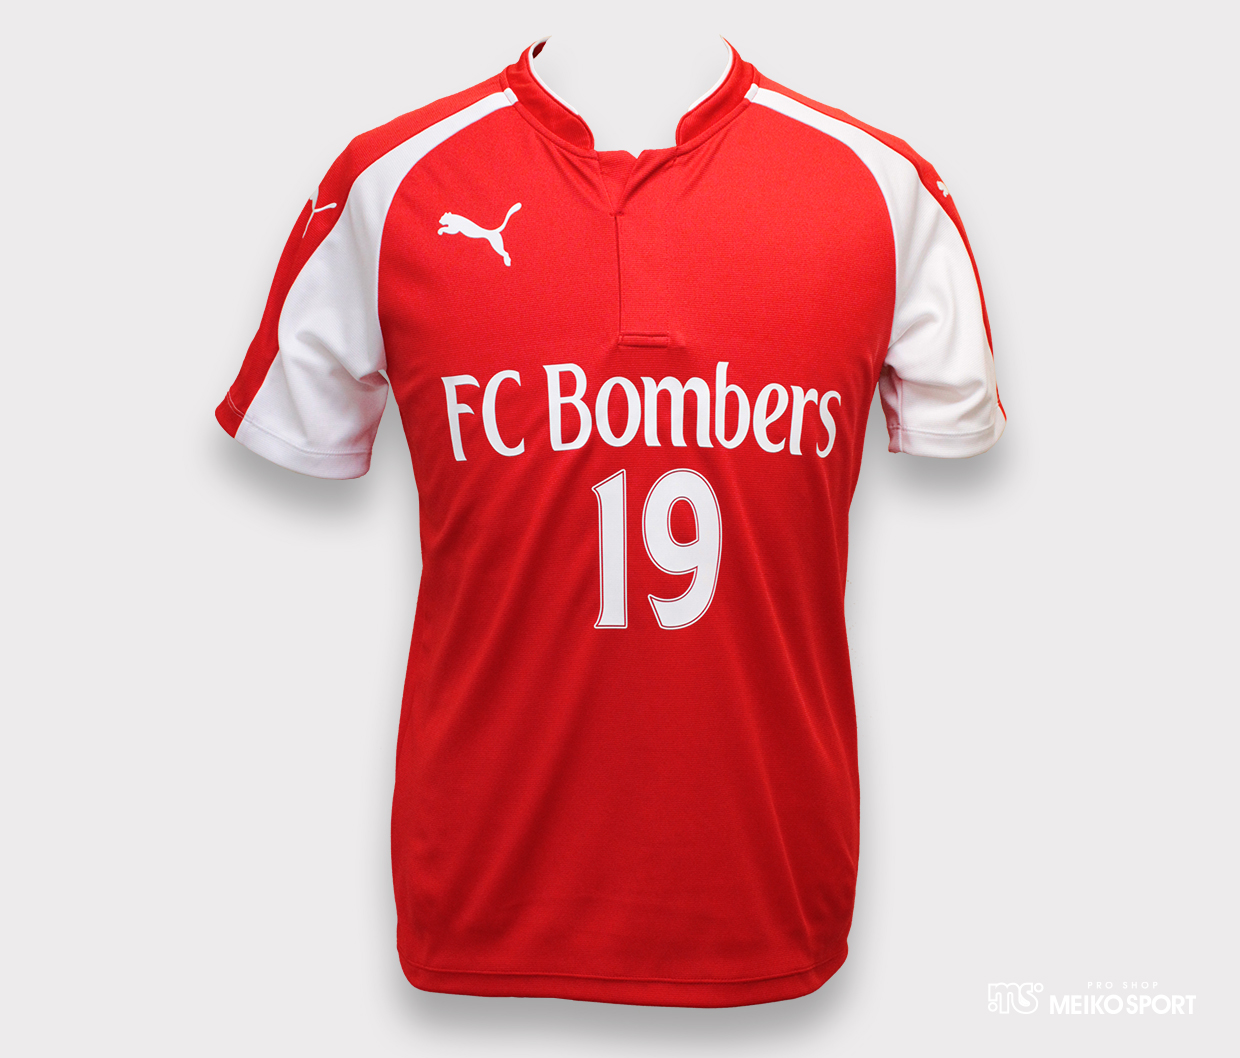 FC Bombers